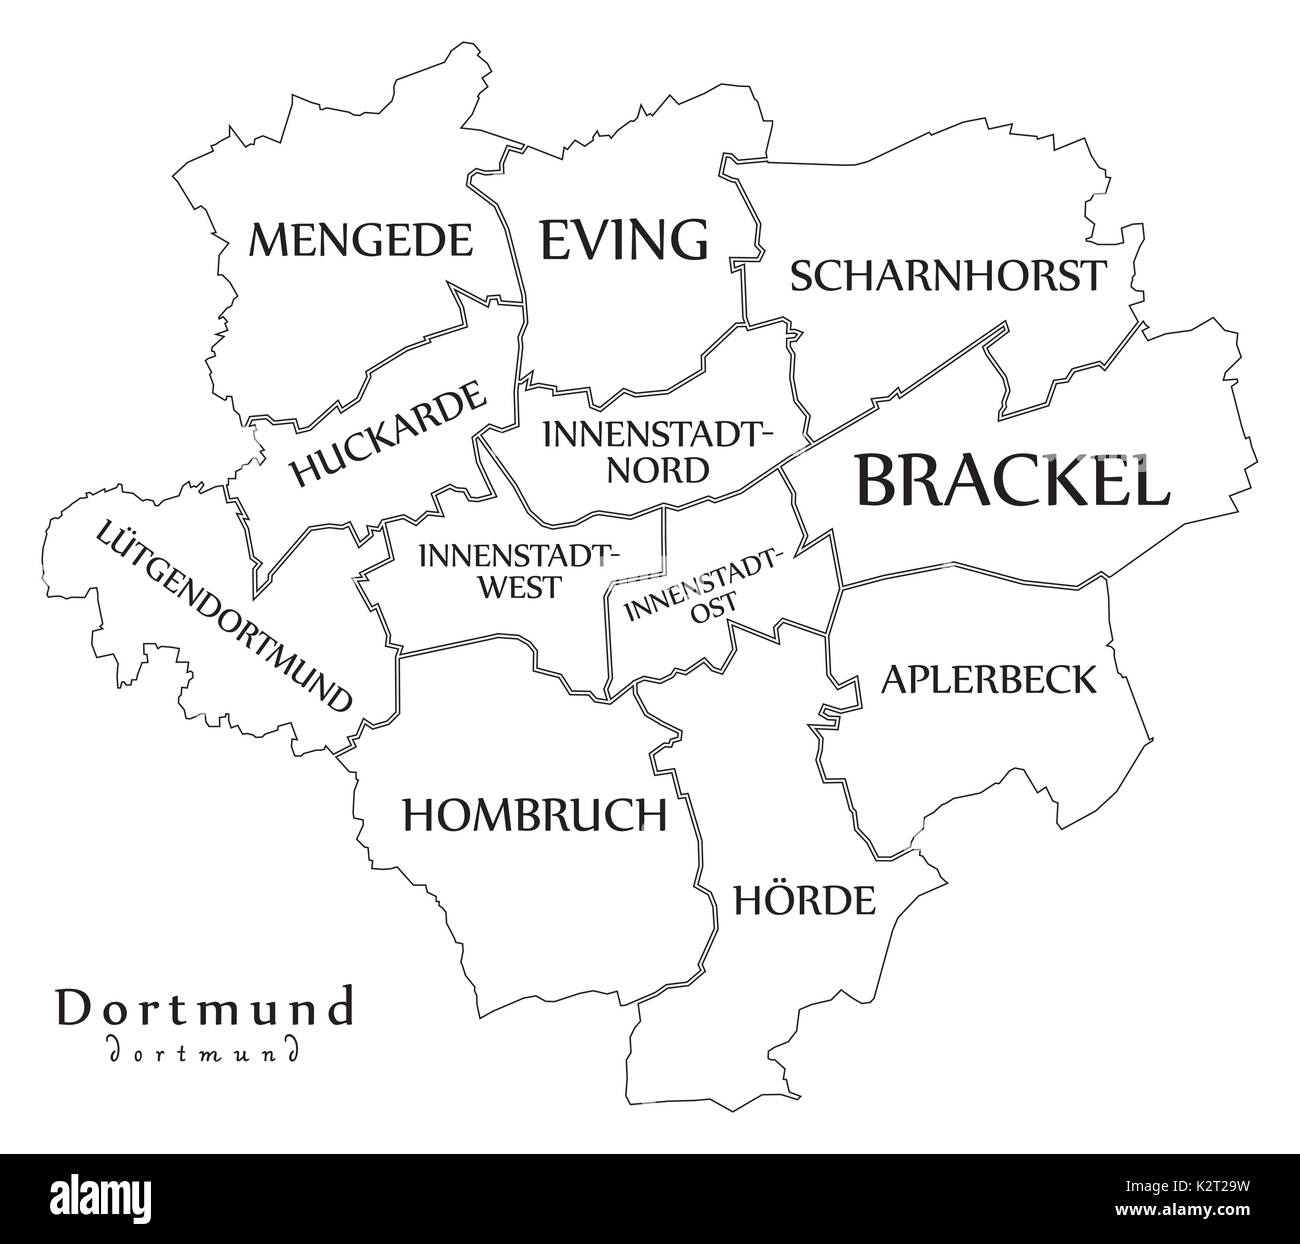 Plan de la ville moderne - Dortmund City de l'Allemagne avec les quartiers et les titres de contour plan Illustration de Vecteur